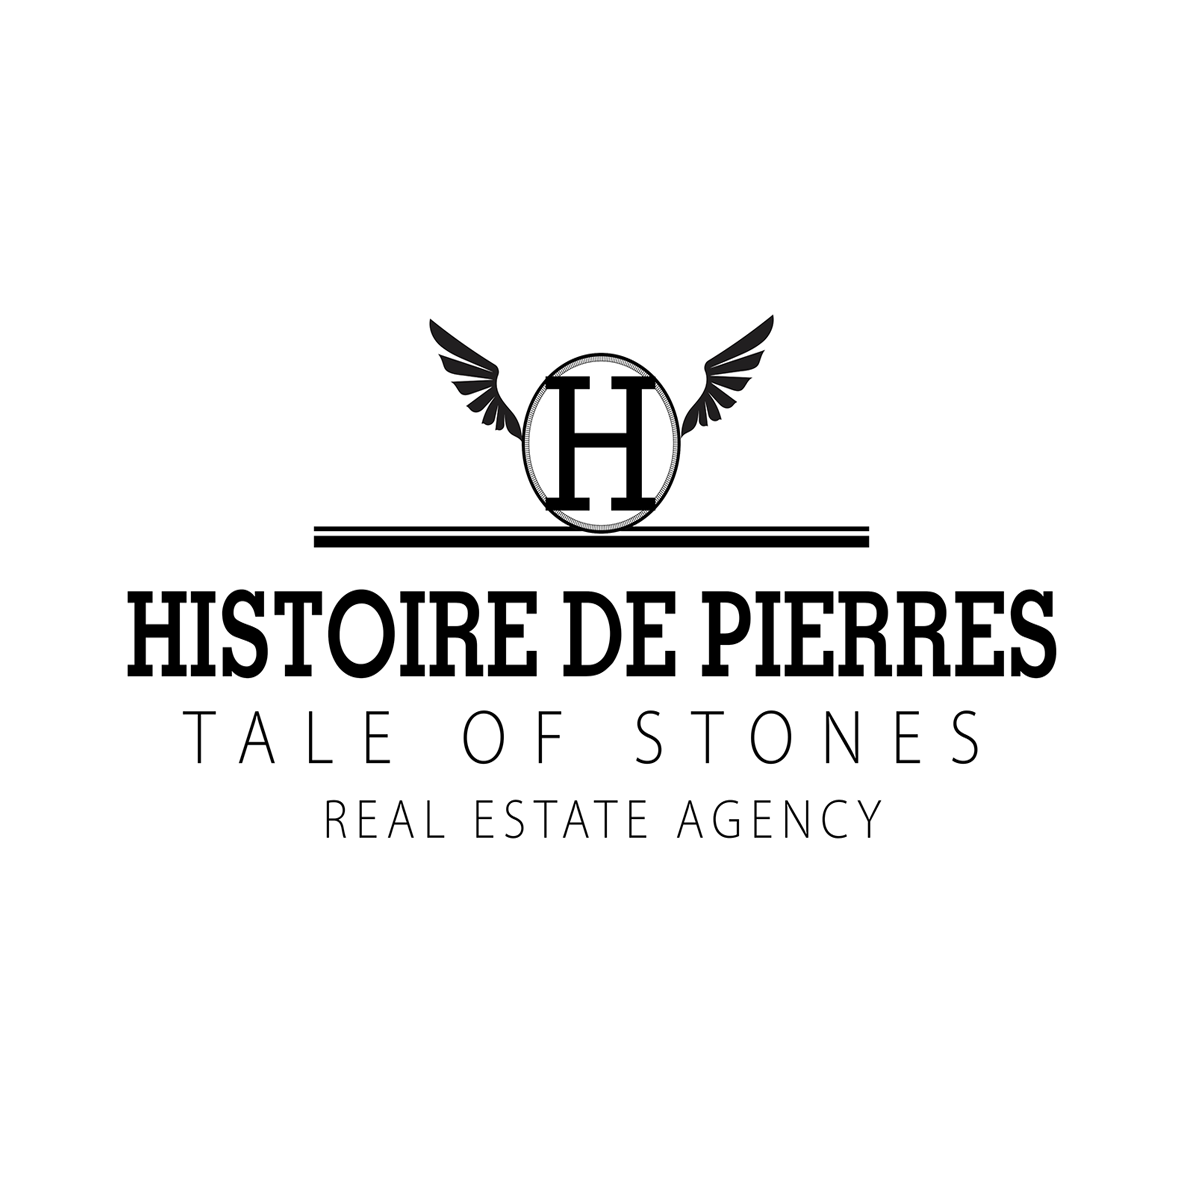 HISTOIRE DE PIERRES